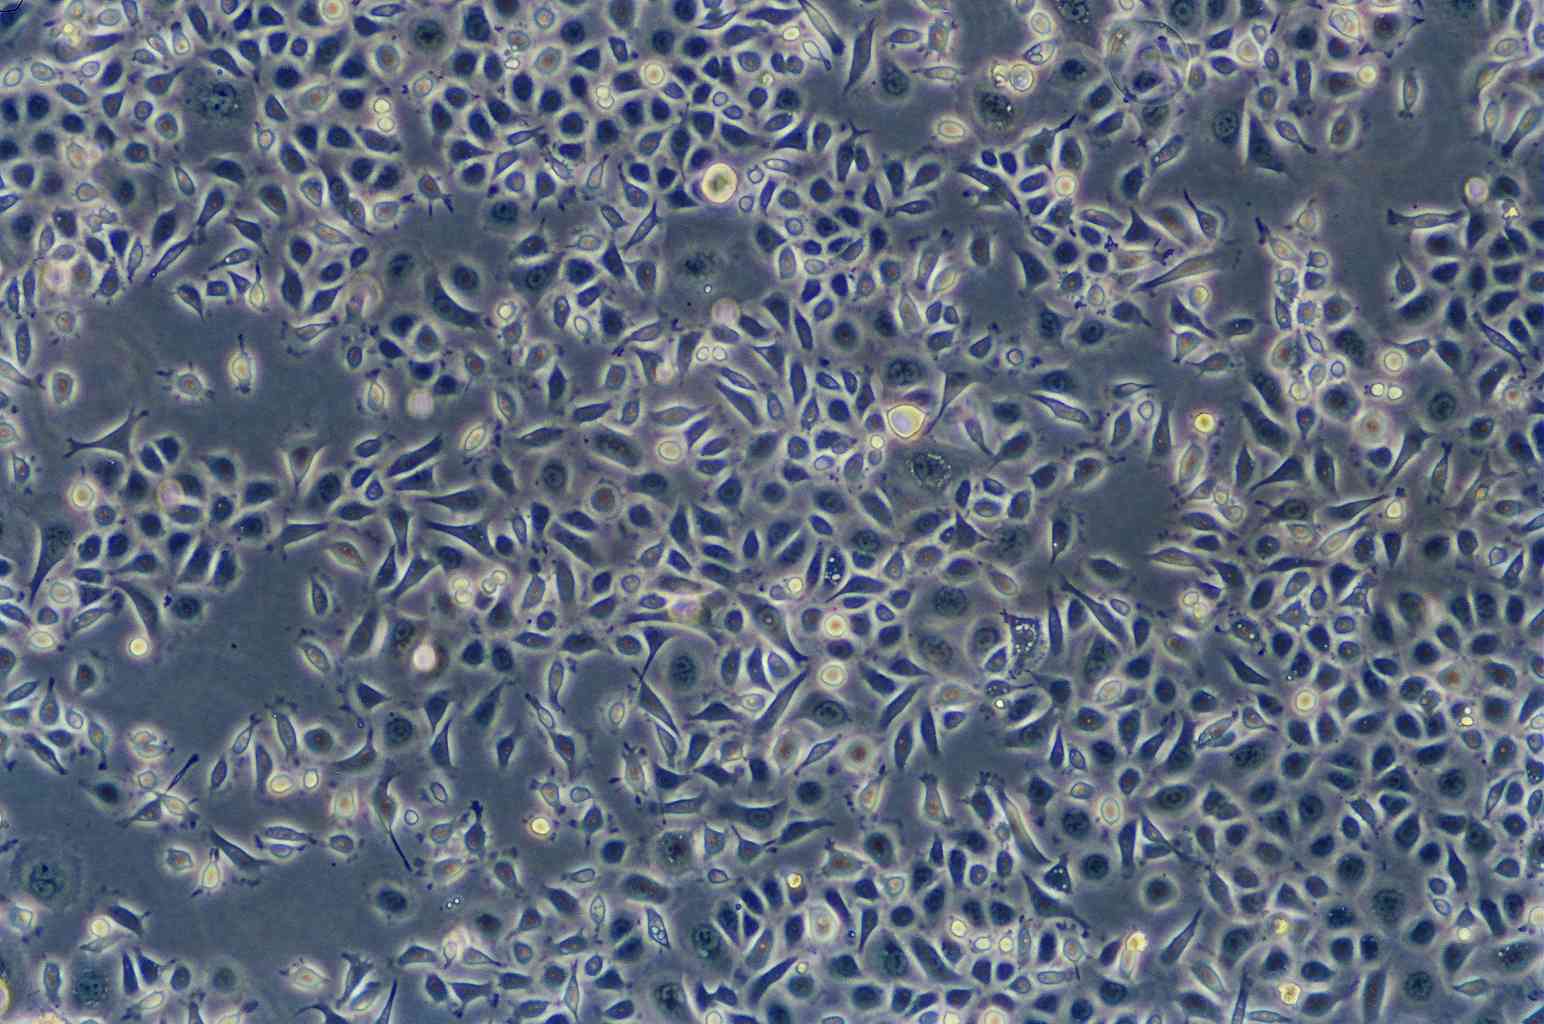 SK-N-BE(2) Cells(赠送Str鉴定报告)|人神经母细胞瘤细胞